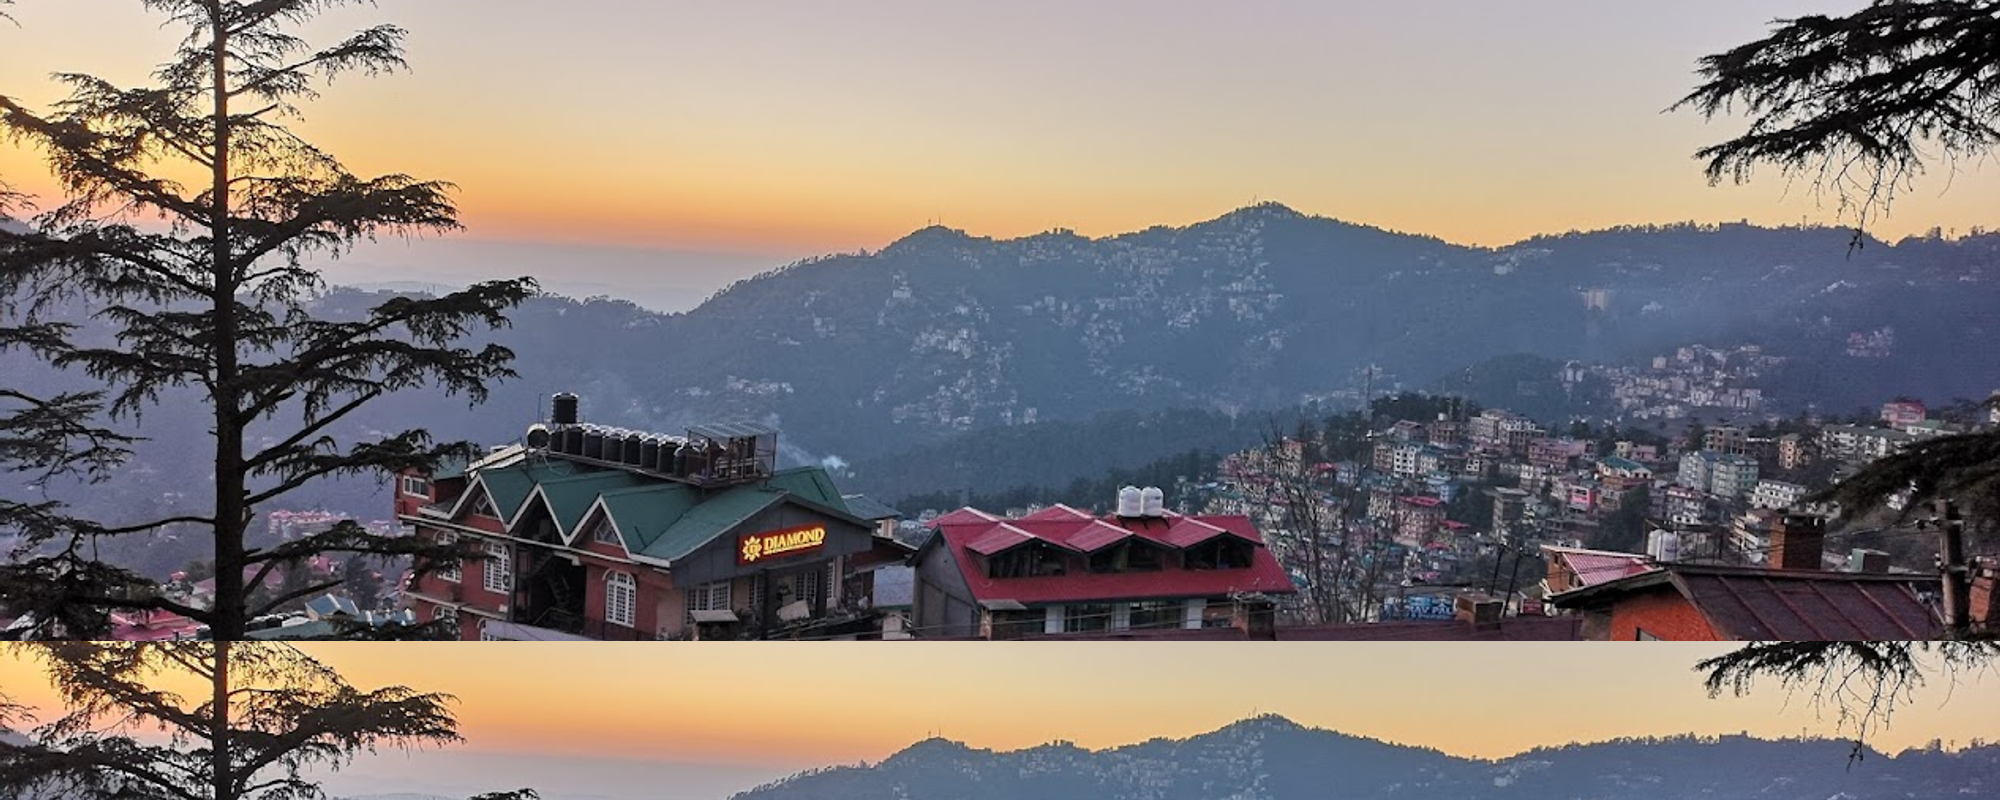 Podróż przez Himalaje / Travel through the Himalayas - Himachal Pradesh - Shimla [PL/ENG]